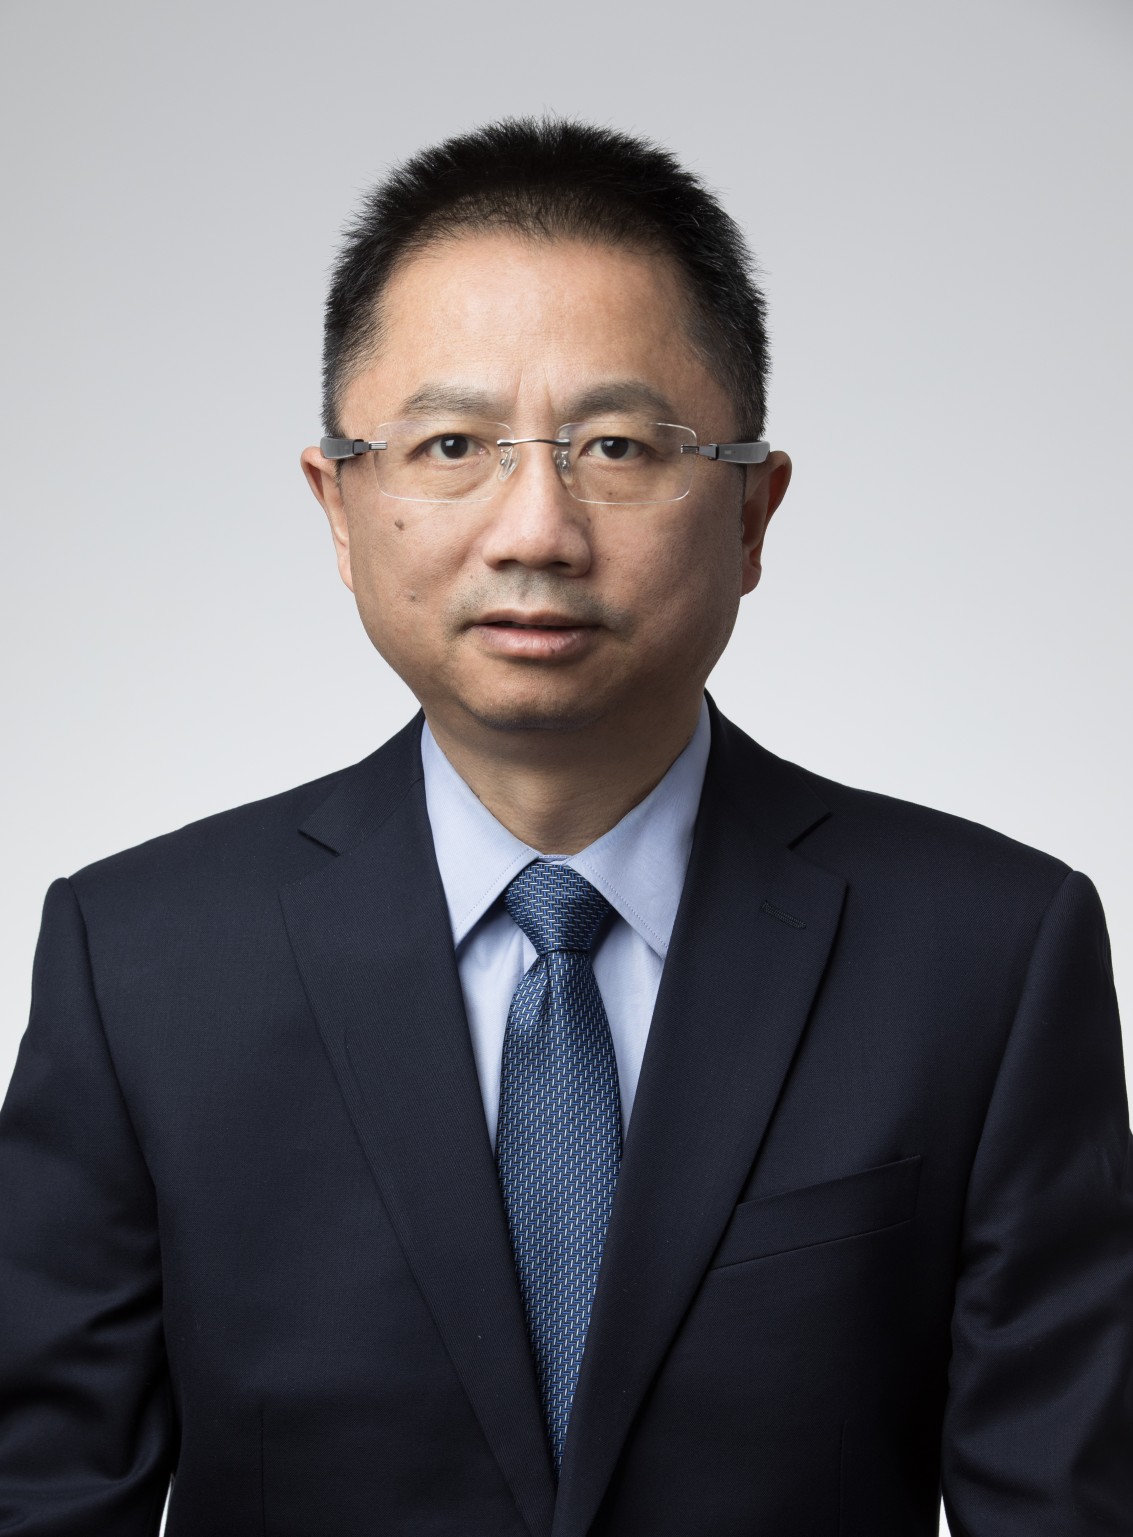 唐智勇 2023年当选为中国科学院院士